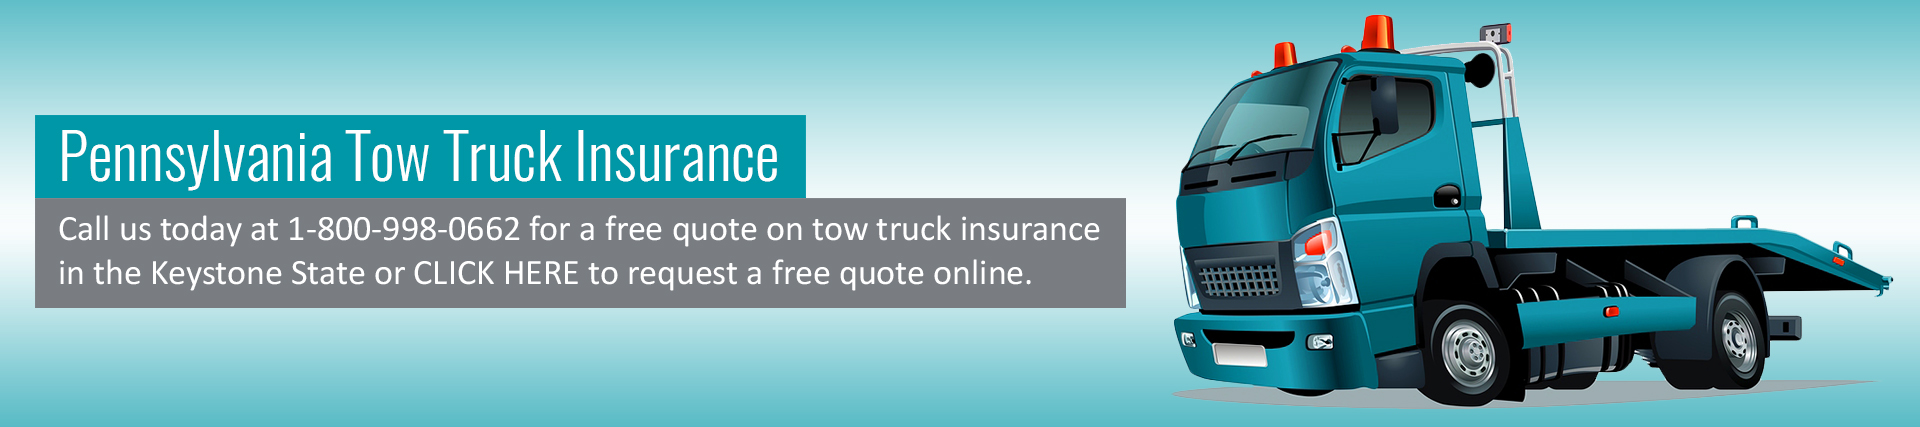 Insurance for Tow Trucks Philadelphia